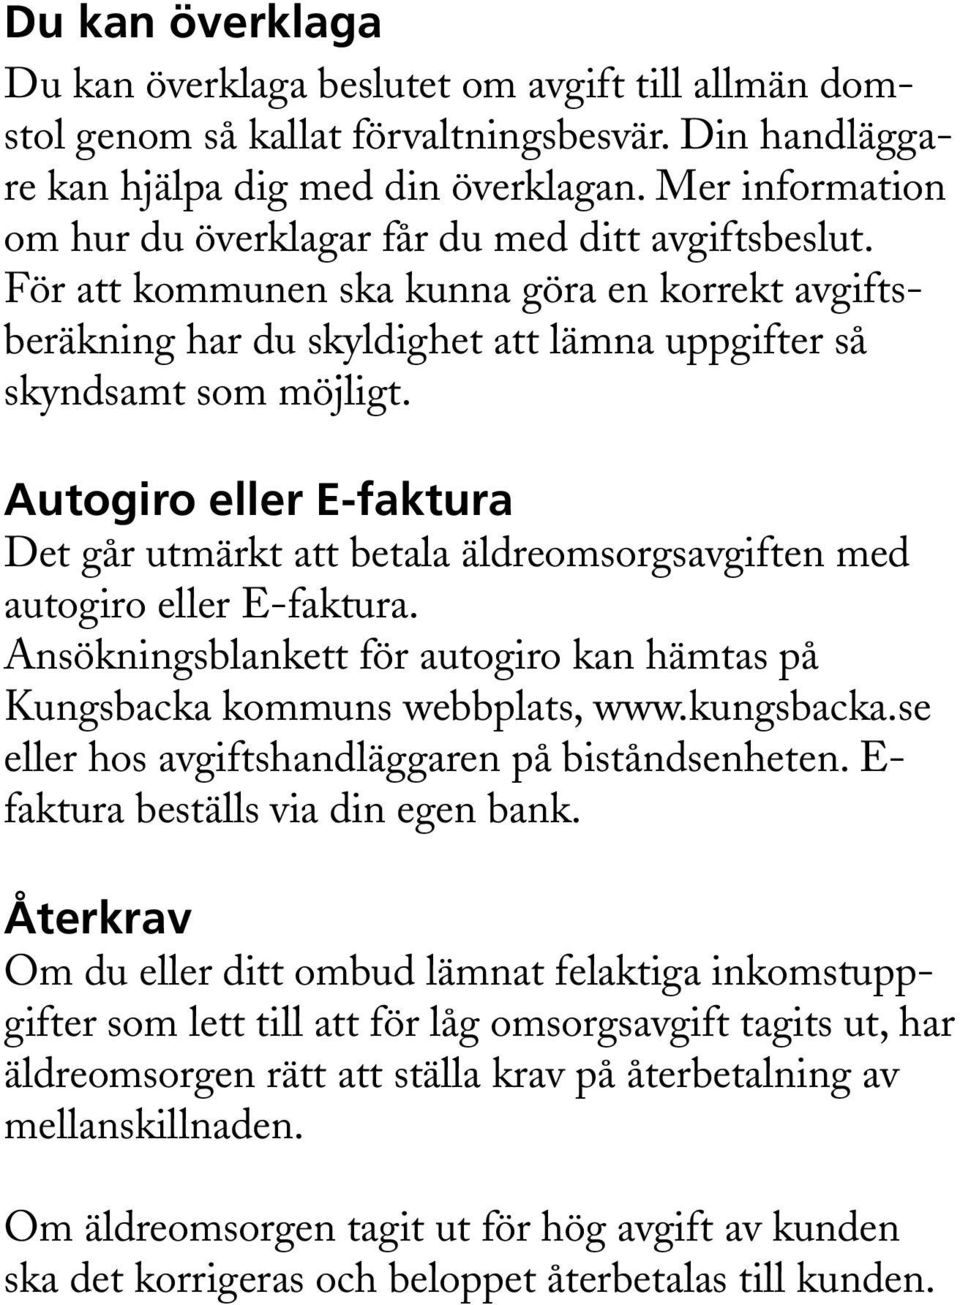 Autogiro eller E-faktura Det går utmärkt att betala äldreomsorgsavgiften med autogiro eller E-faktura. Ansökningsblankett för autogiro kan hämtas på Kungsbacka kommuns webbplats, www.kungsbacka.